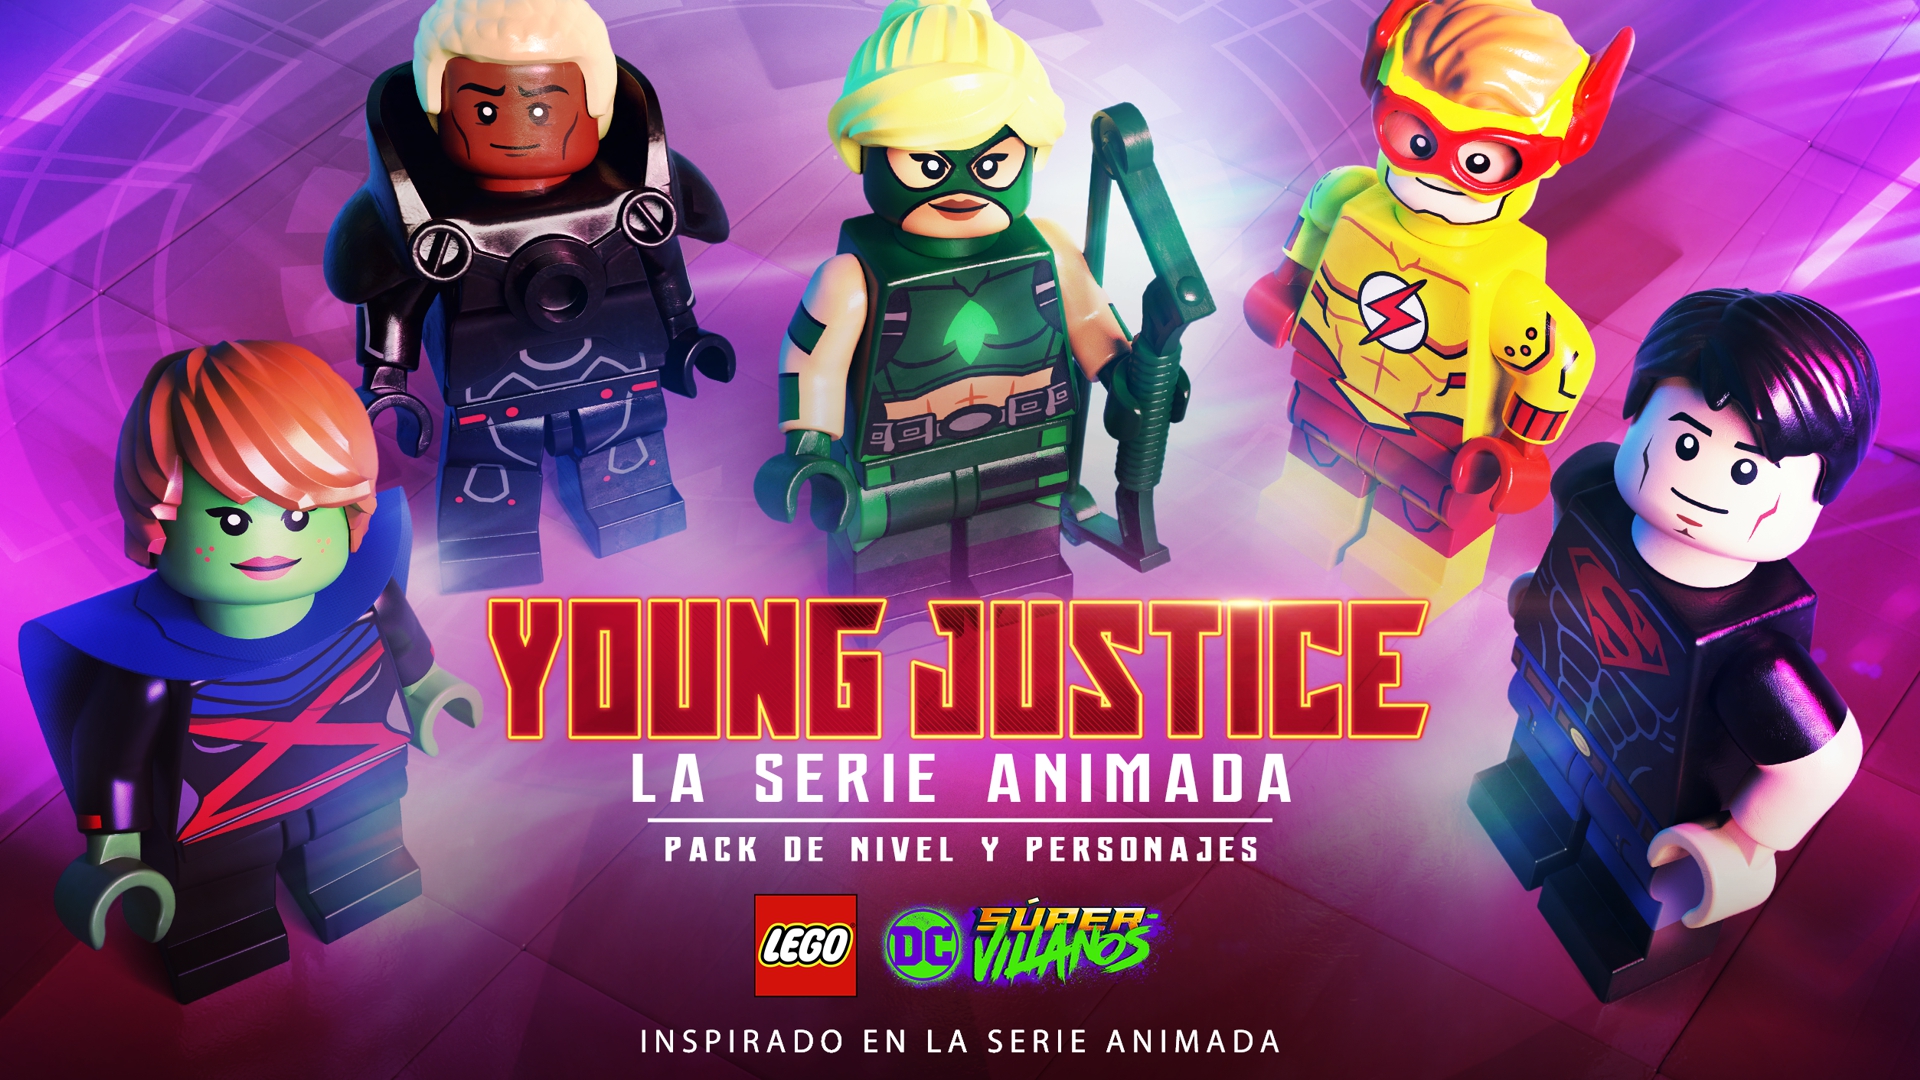 Los y personajes de la serie Young Justice llegan a LEGO DC Súper-Villanos en un nuevo pack | GameProTV